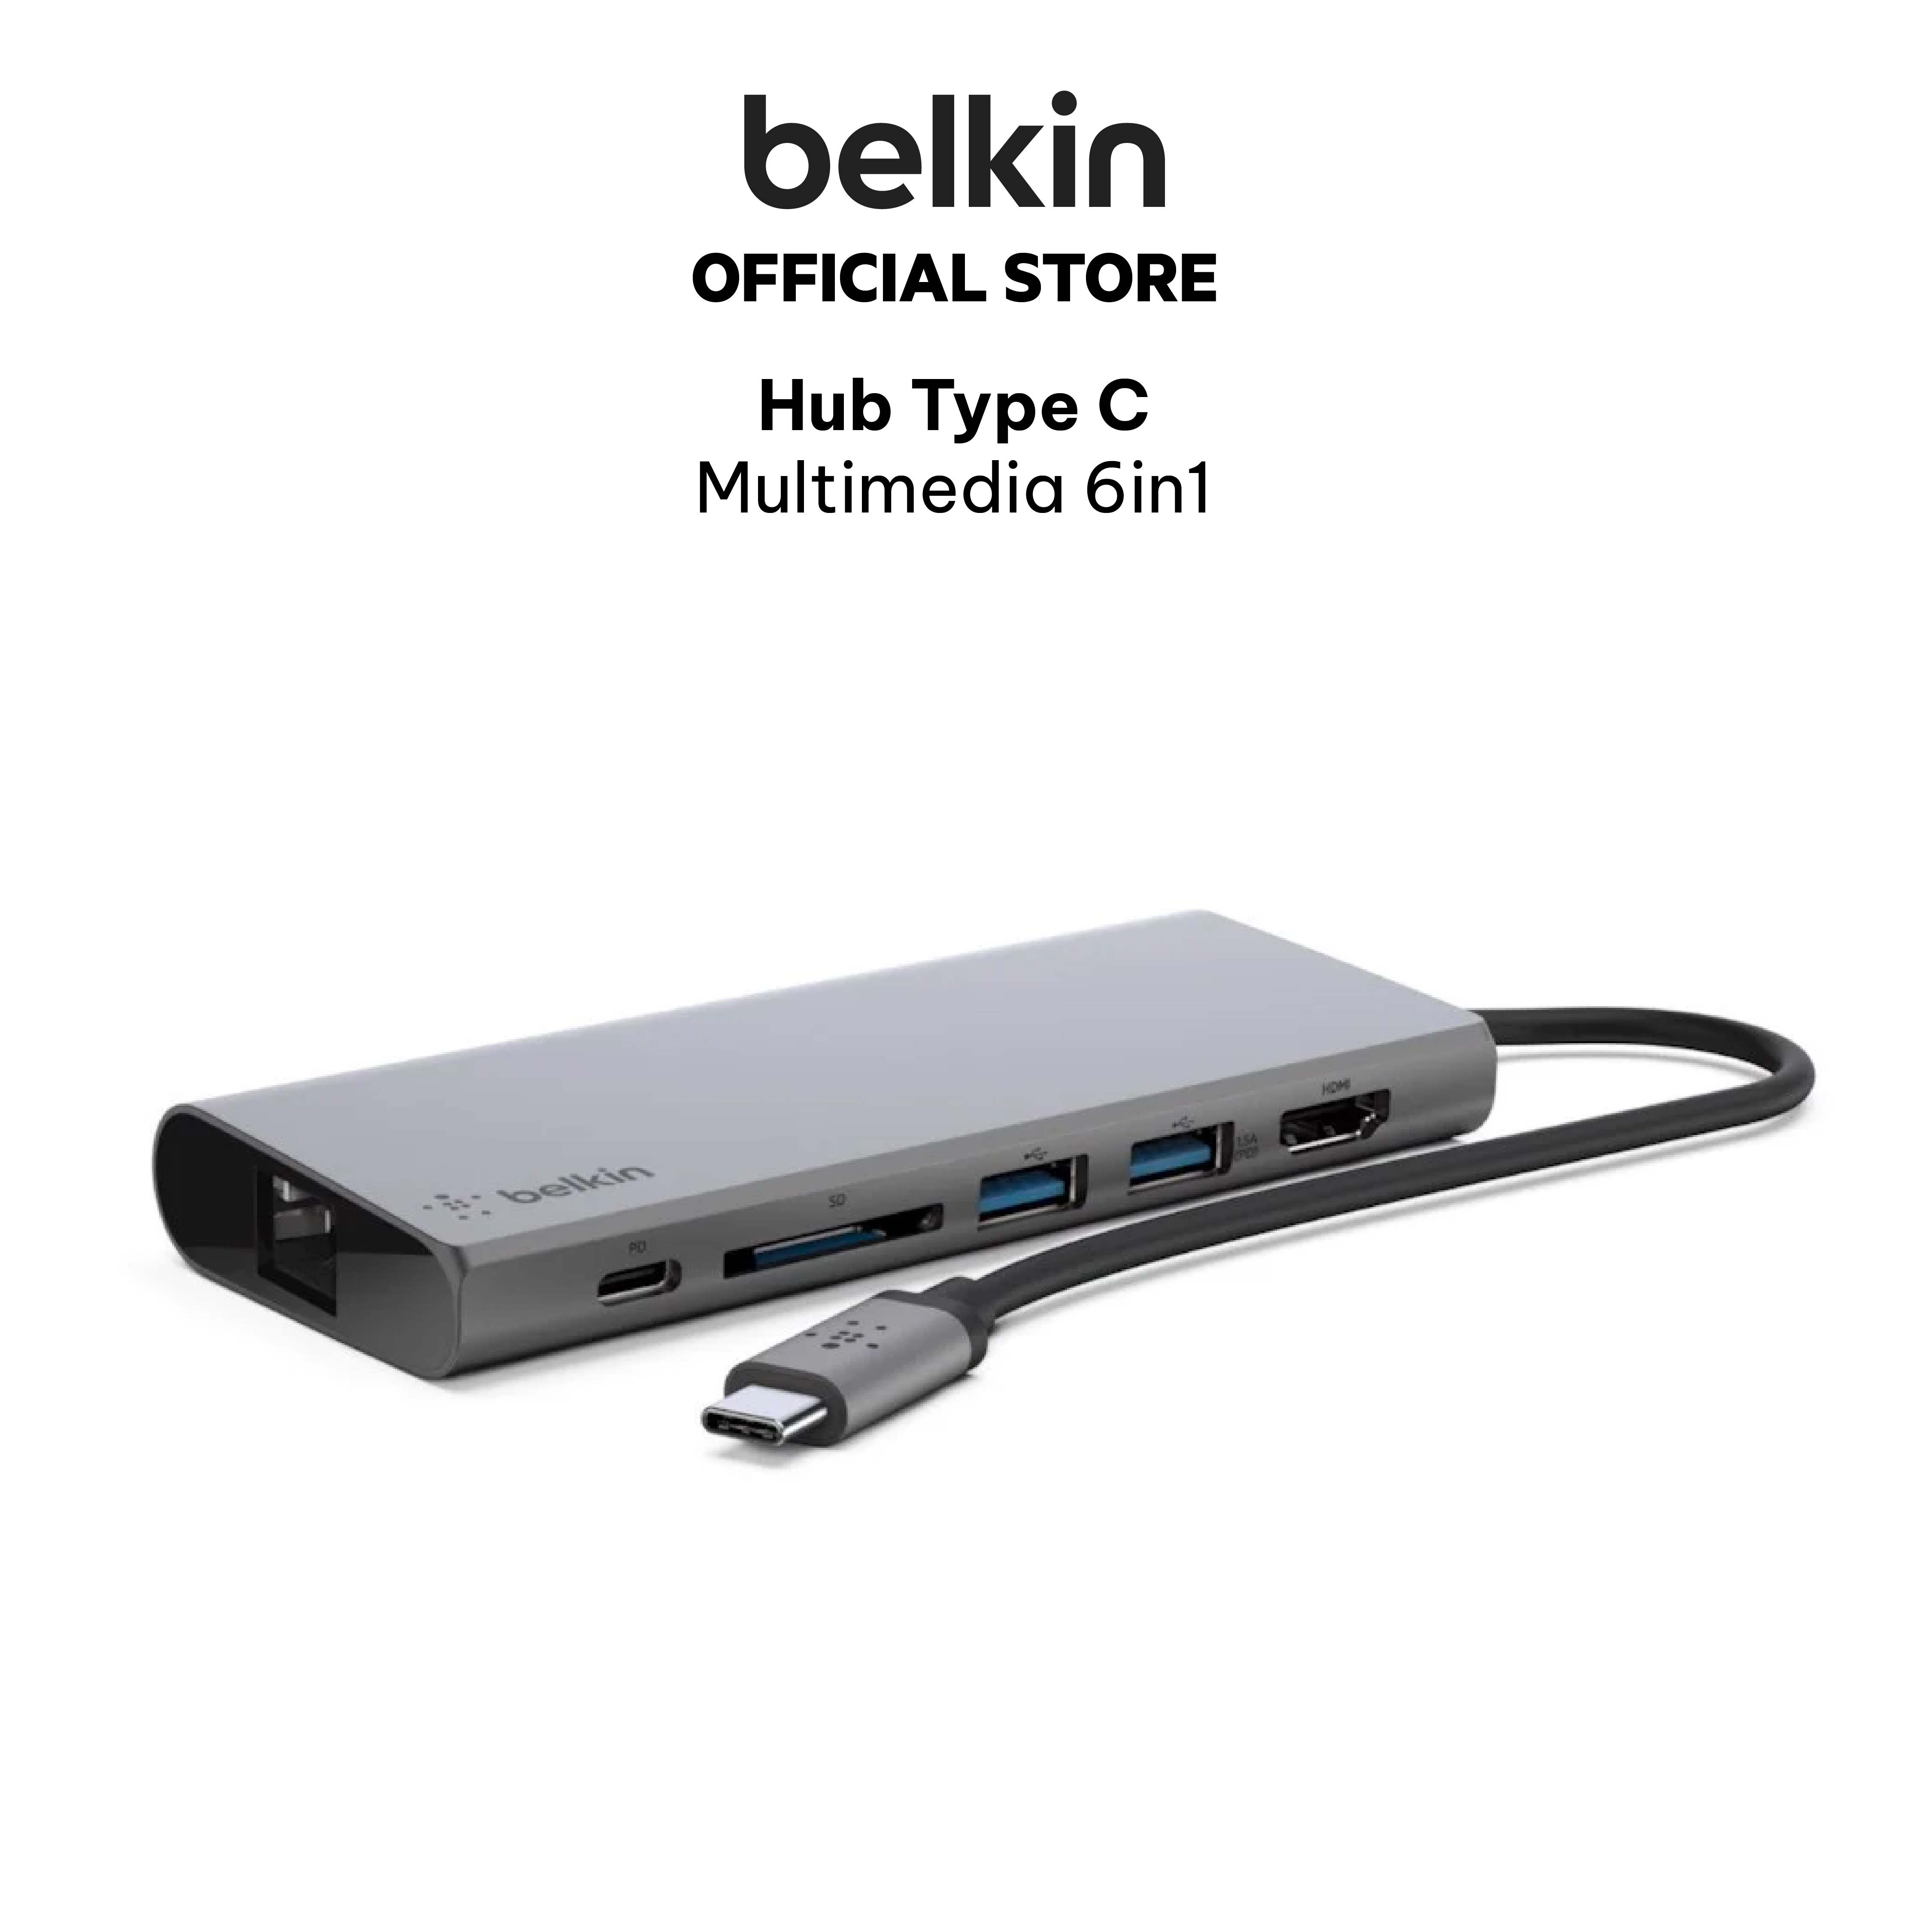 Hub chuyển đổi USB Type C 3.1 Multimedia 6in1 Belkin - Hàng chính hãng